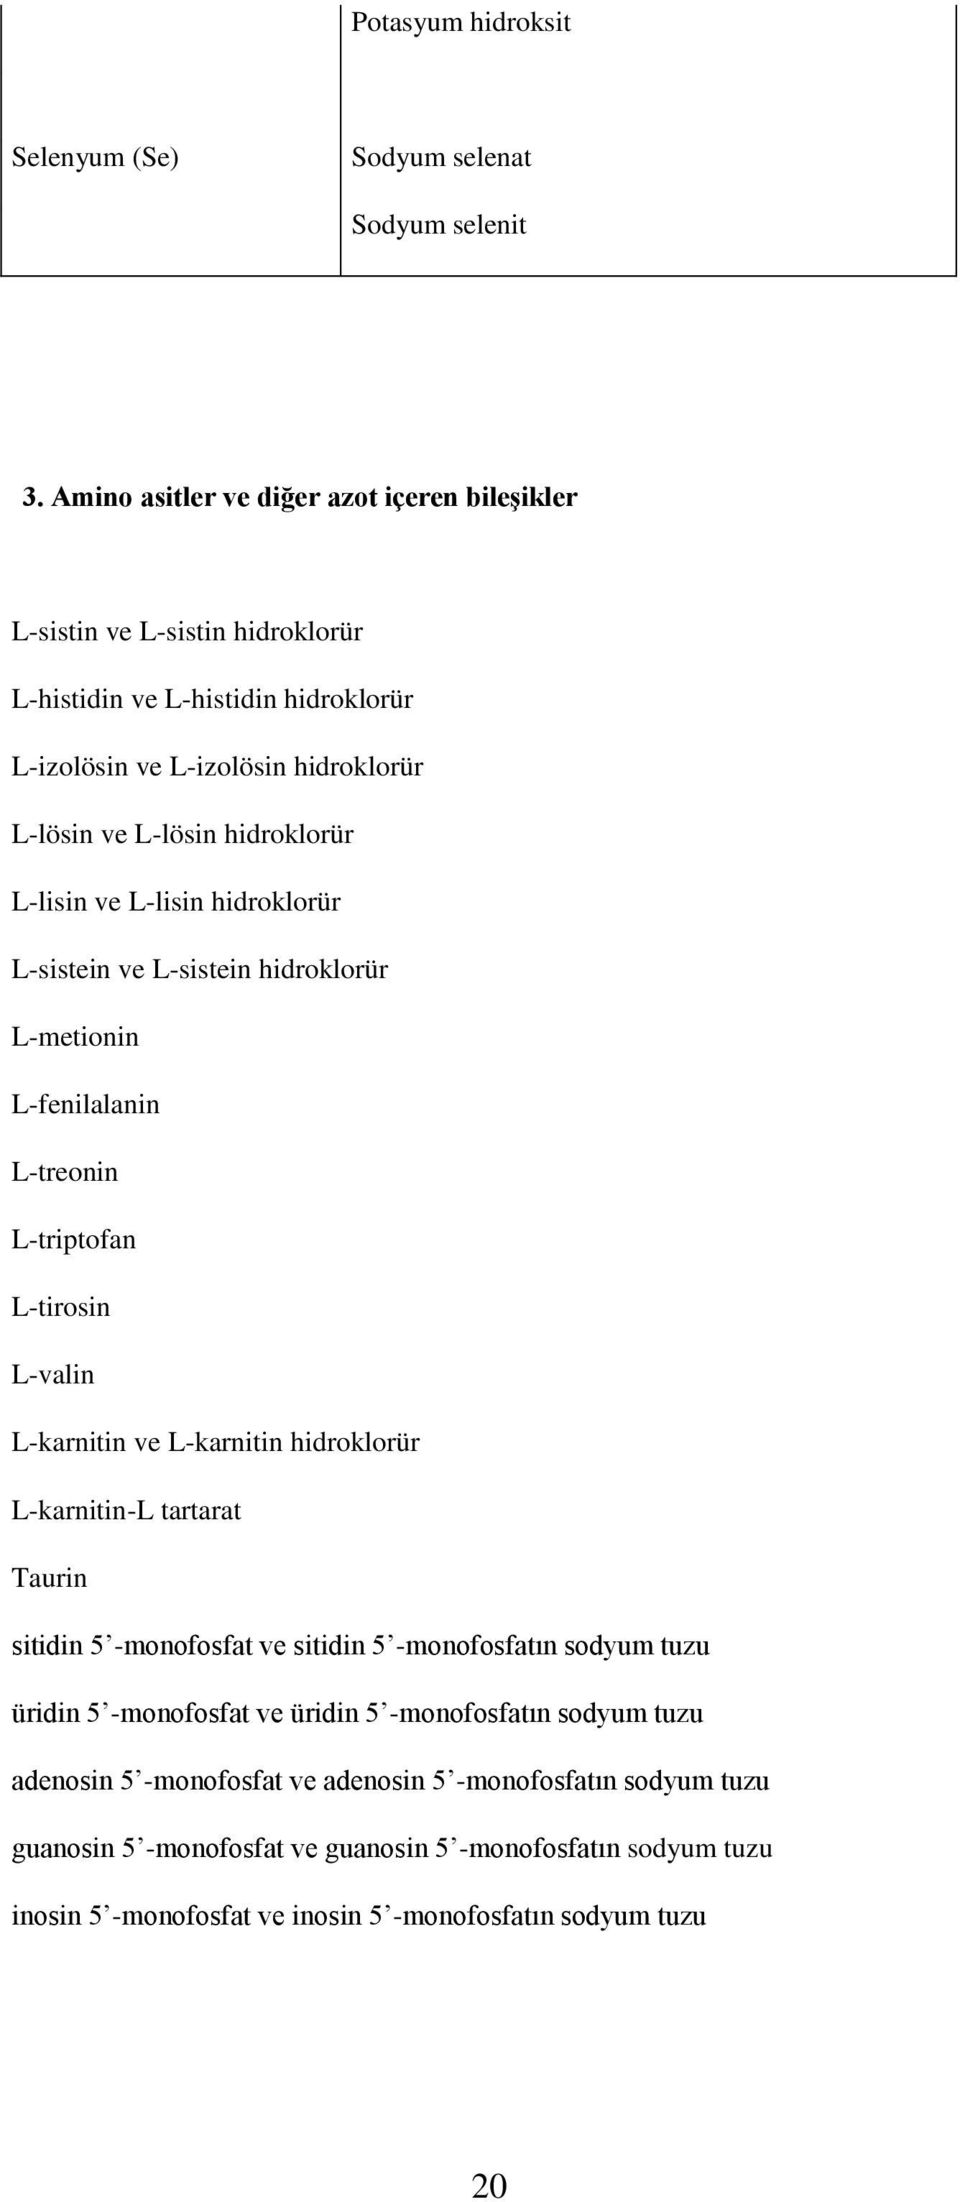 L-lisin ve L-lisin hidroklorür L-sistein ve L-sistein hidroklorür L-metionin L-fenilalanin L-treonin L-triptofan L-tirosin L-valin L-karnitin ve L-karnitin hidroklorür L-karnitin-L